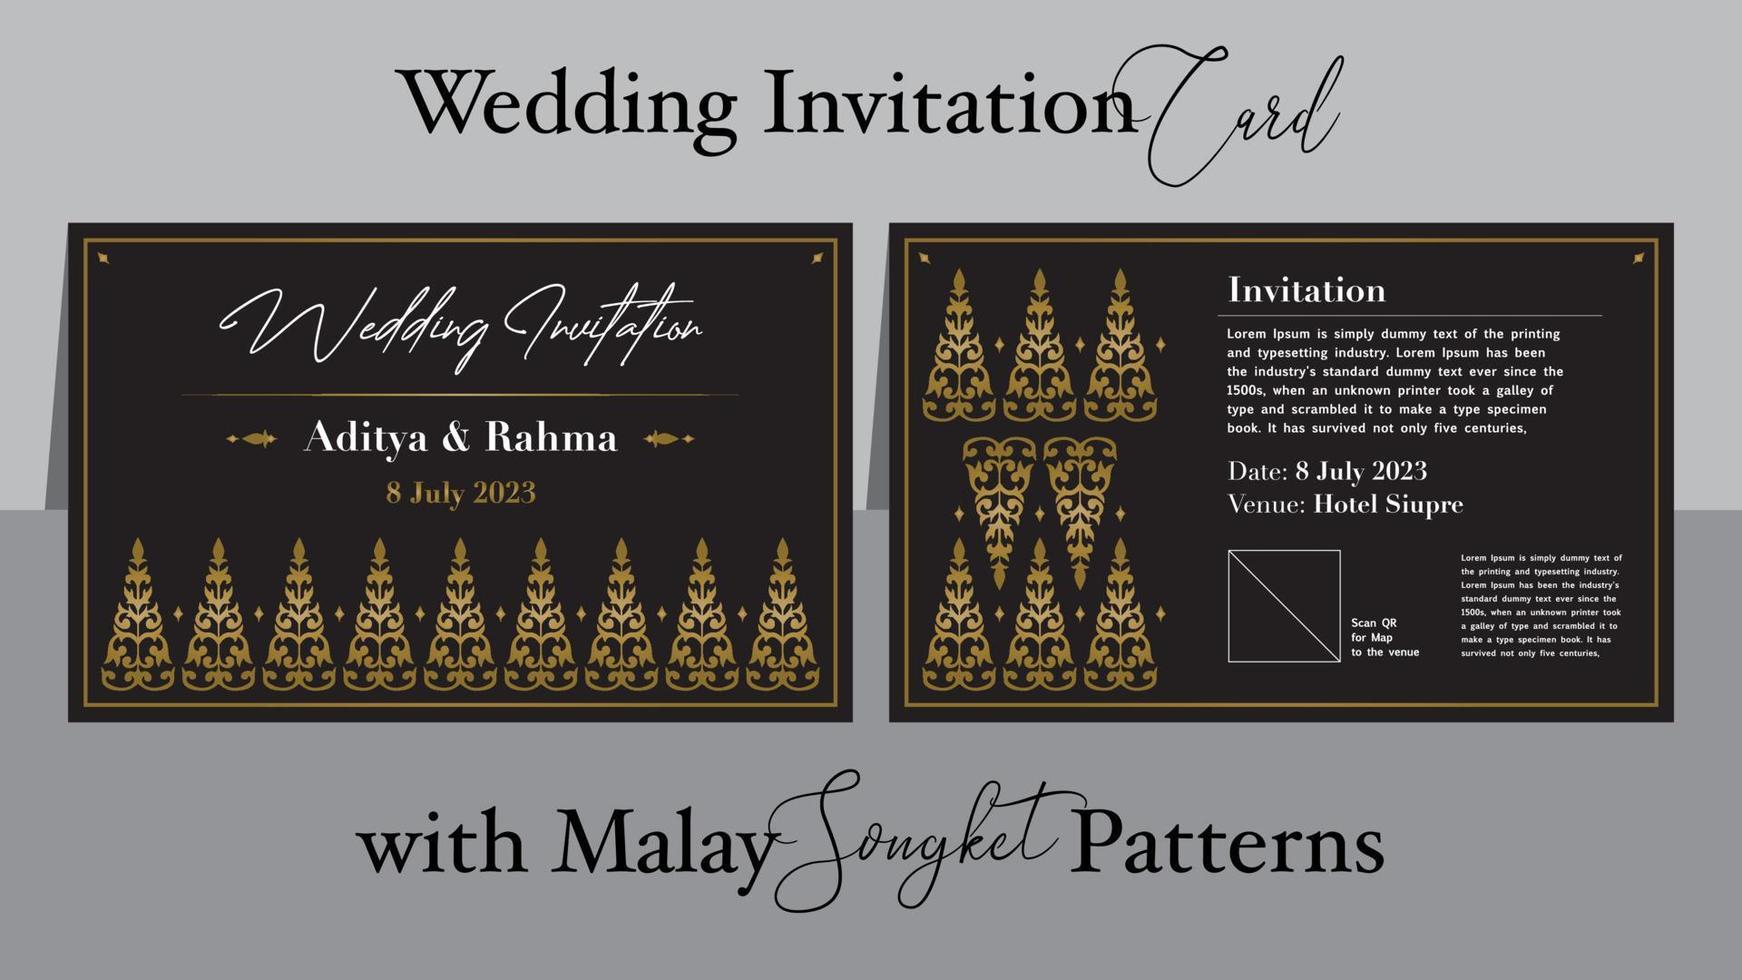 bröllop inbjudan med malaysiska songket mönster, vektor, traditionell melayu undangan pernikahan vektor